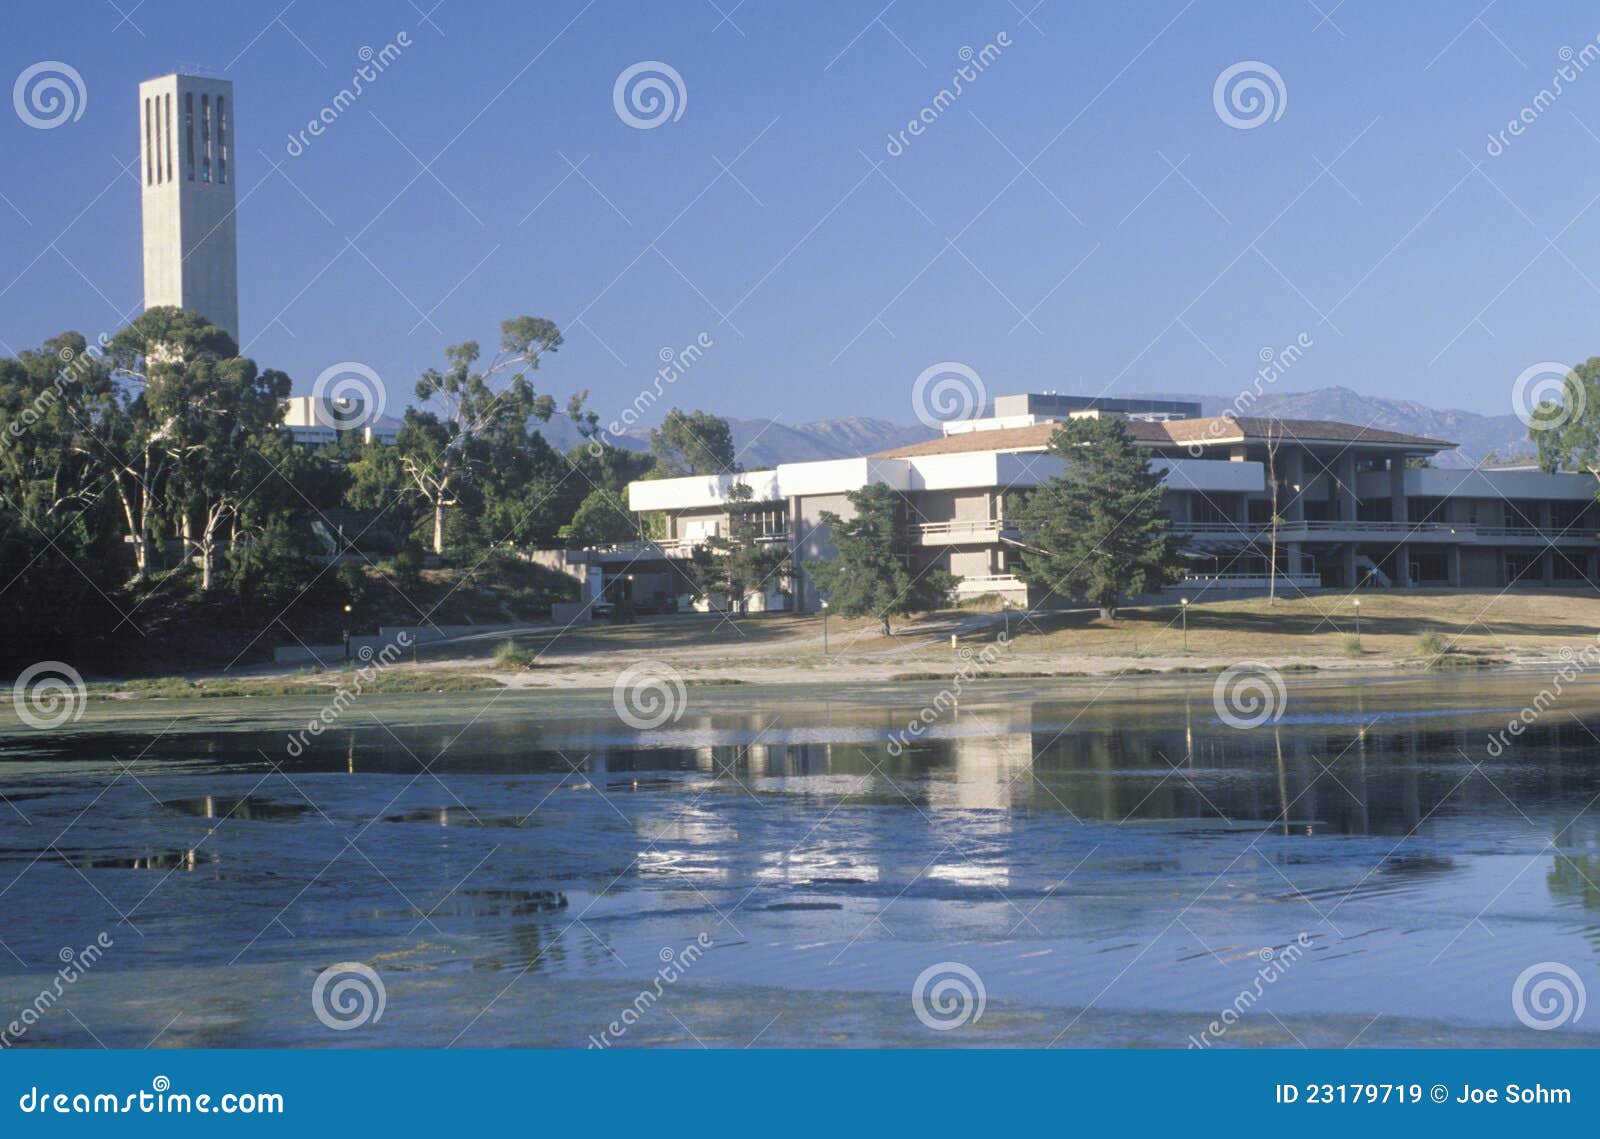 University CA at Santa Barbara Stock Image - Image of campus, classroom